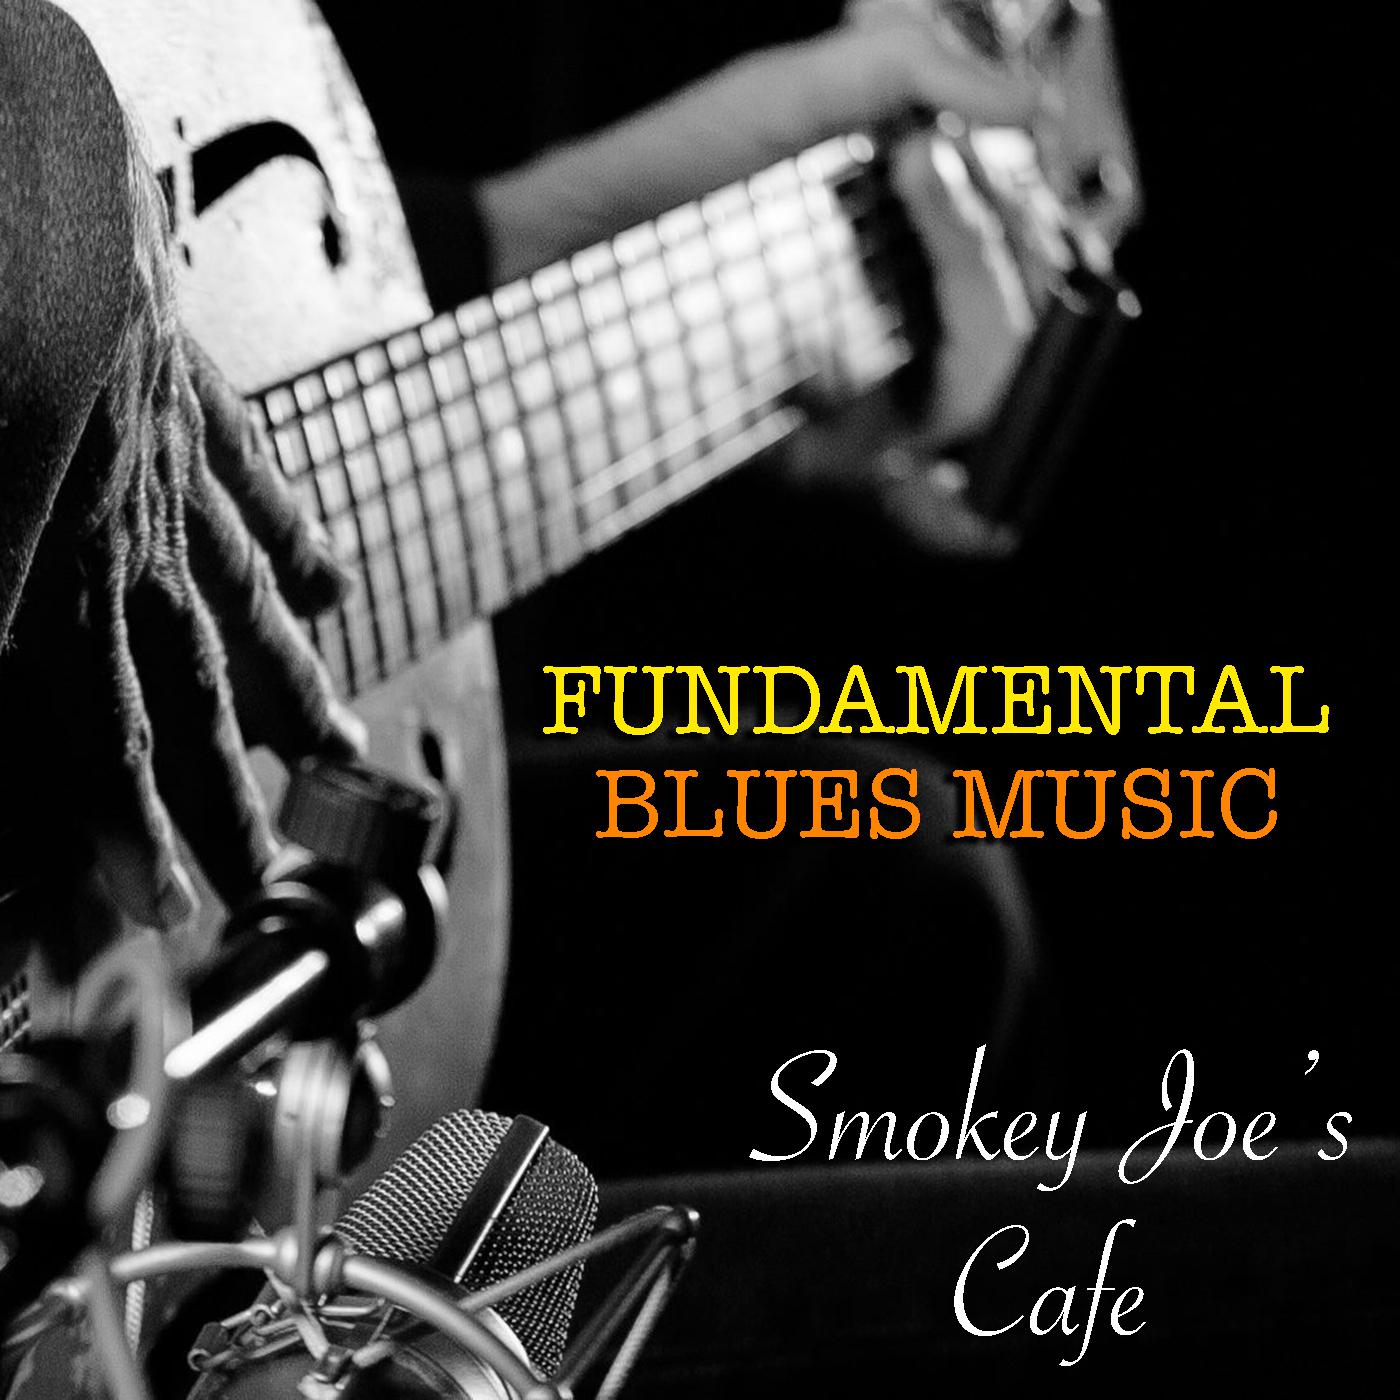 Smokey Joe's Cafe Fundamental Blues Music